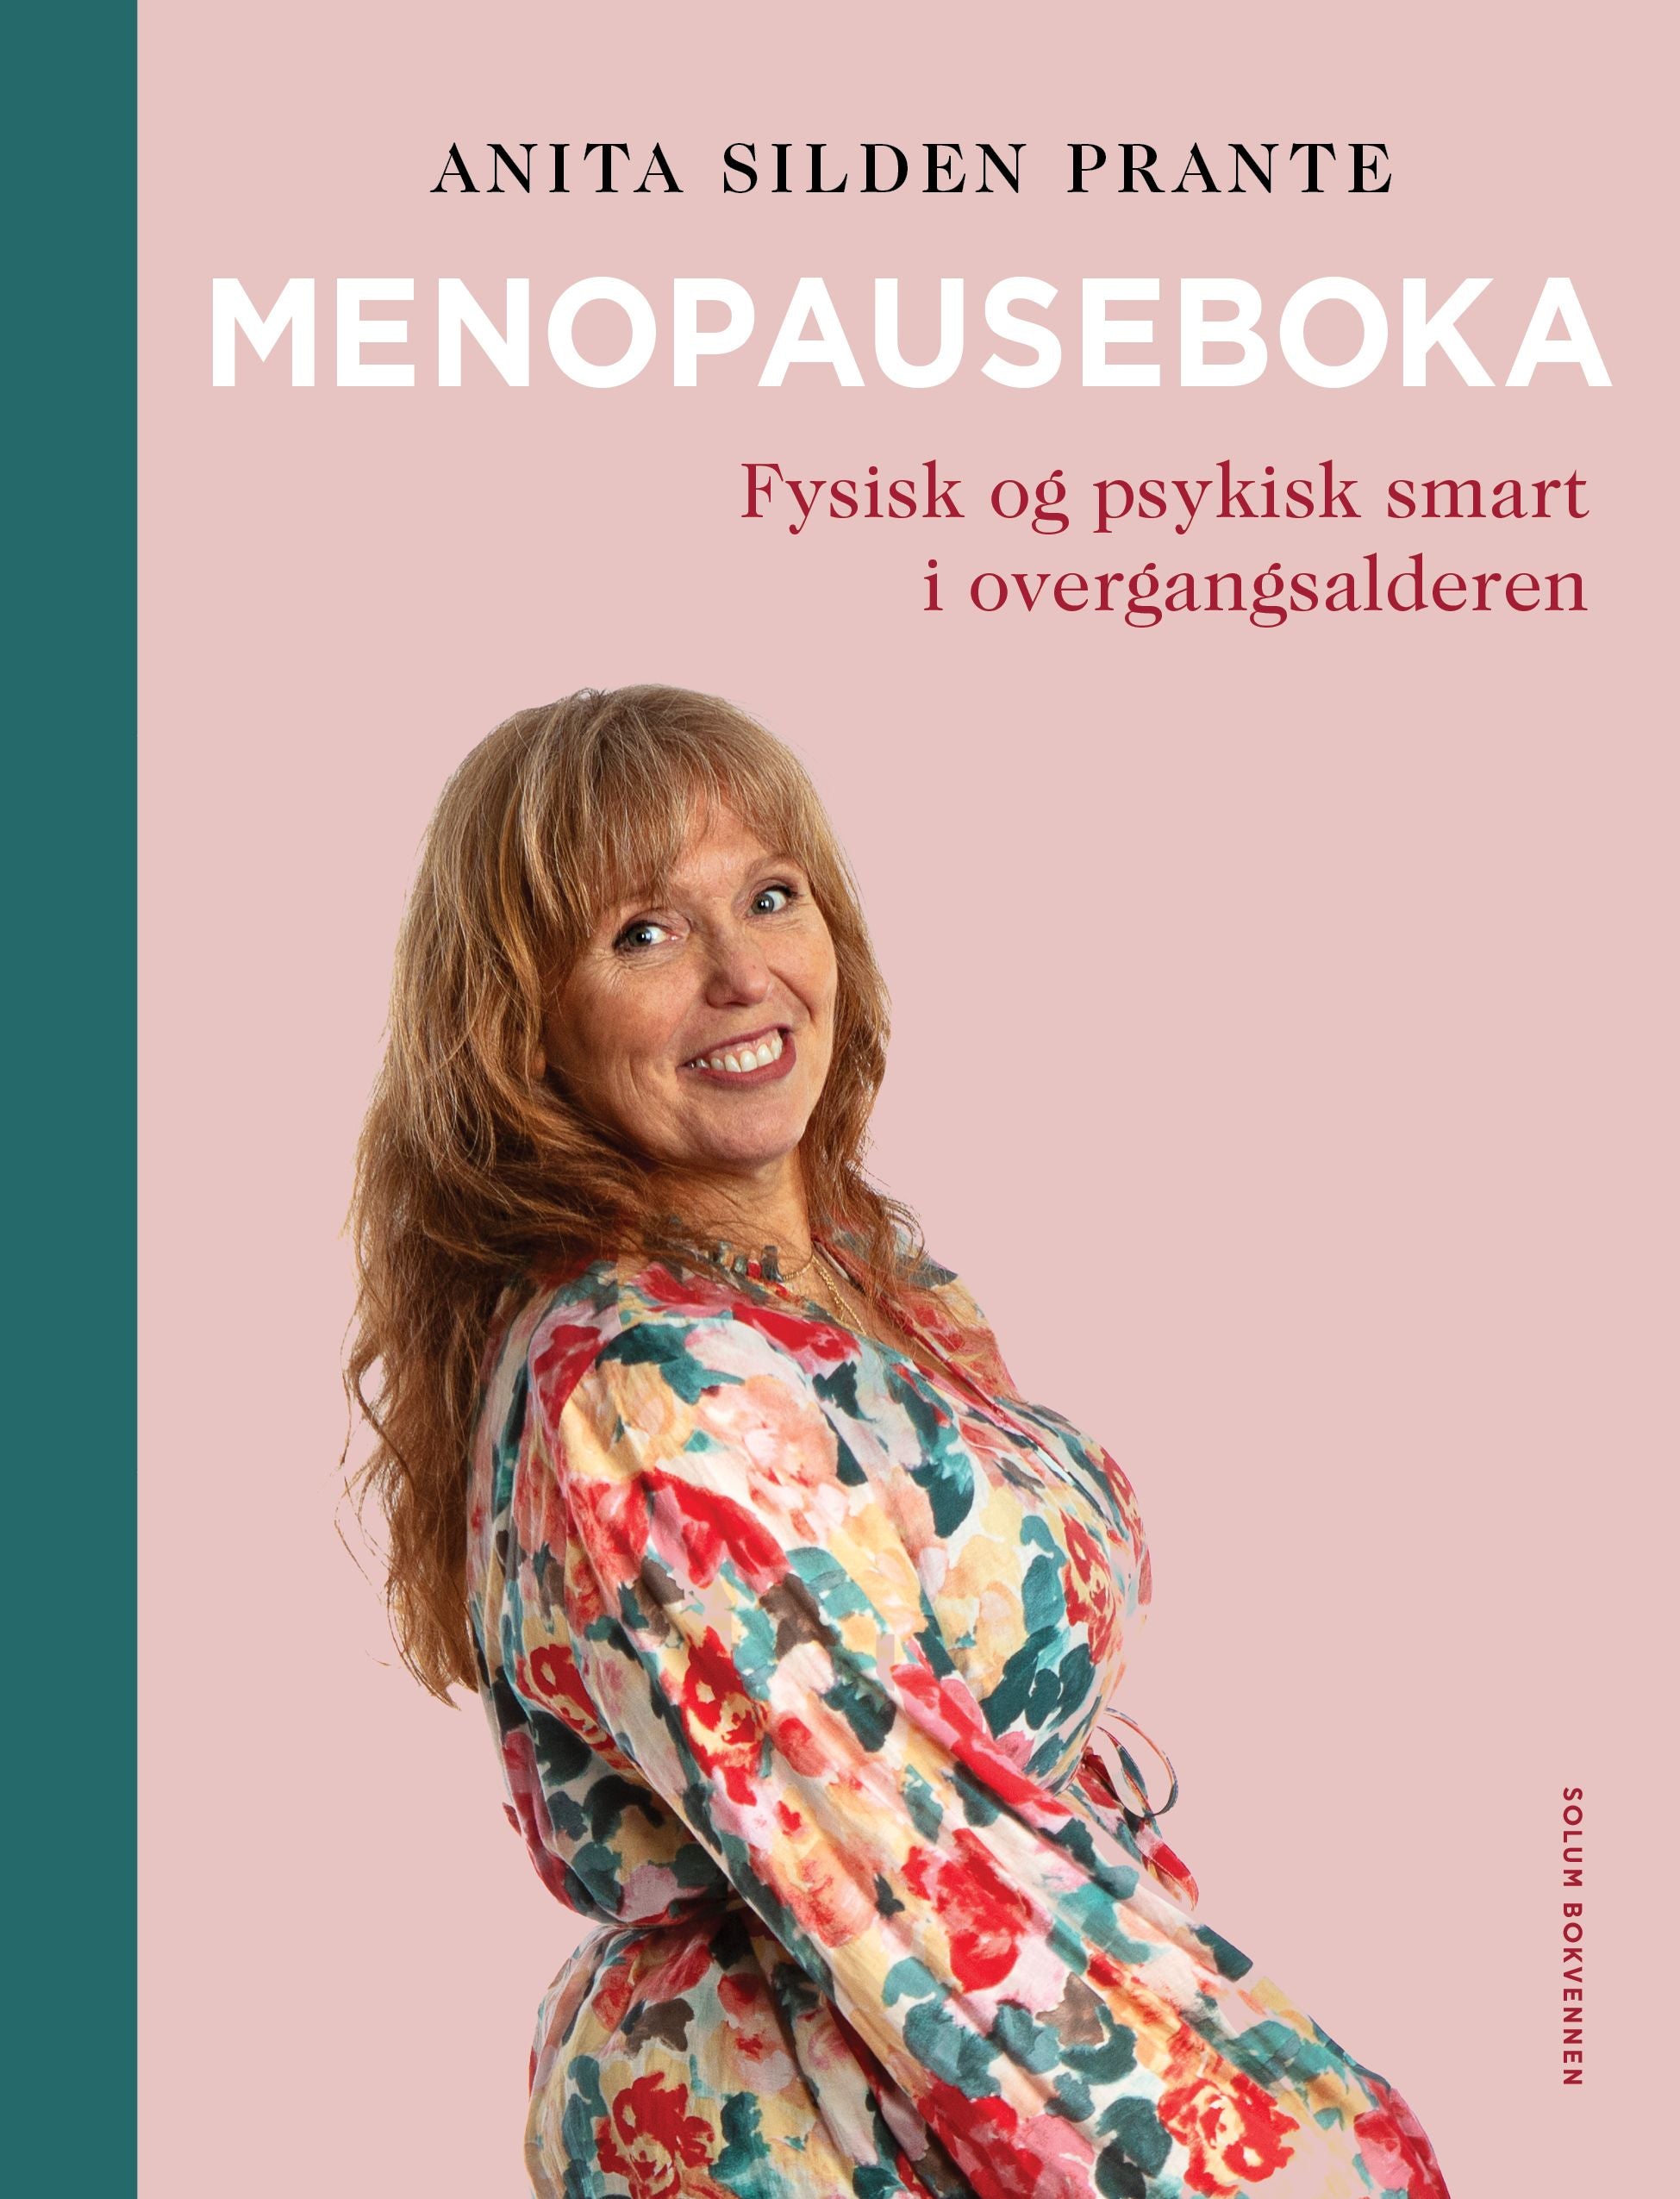 Menopauseboka: fysisk og psykisk smart i overgangsalderen